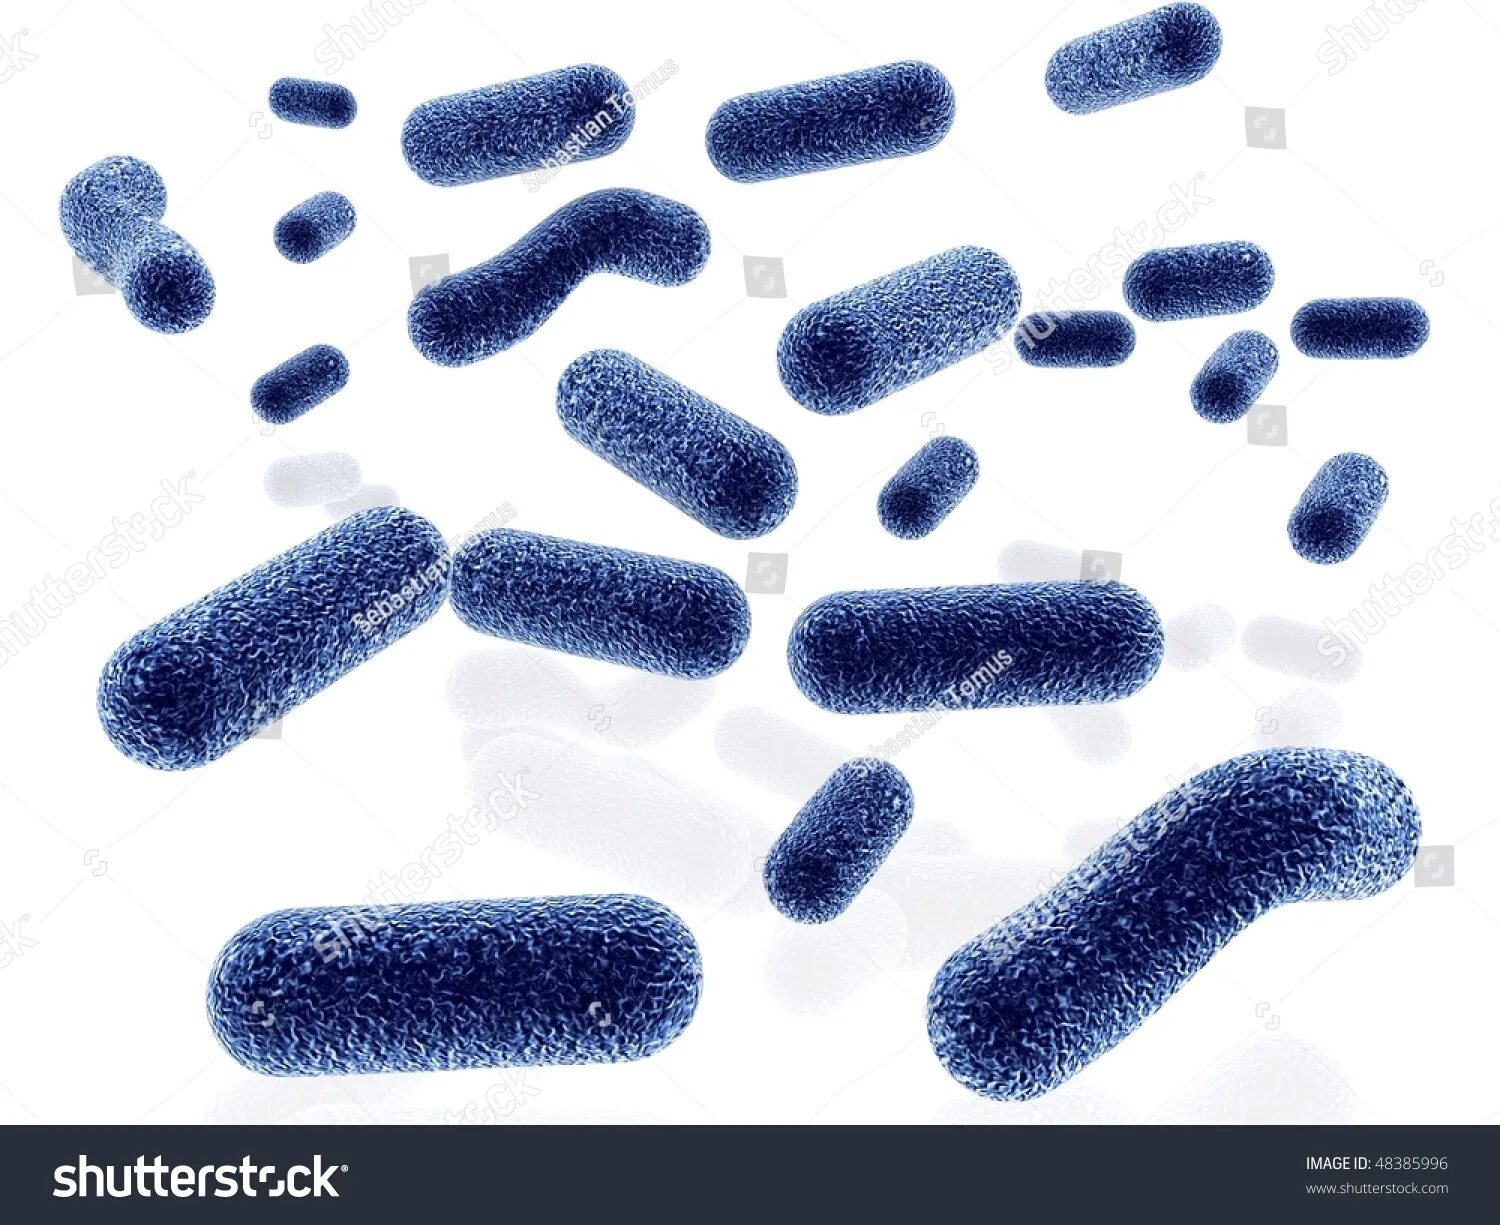 Бактерии выделяют метан. Бактерии голубые. Рамка микробы. Рамка бактерии на белом фоне. Синяя бактерия на ногте.